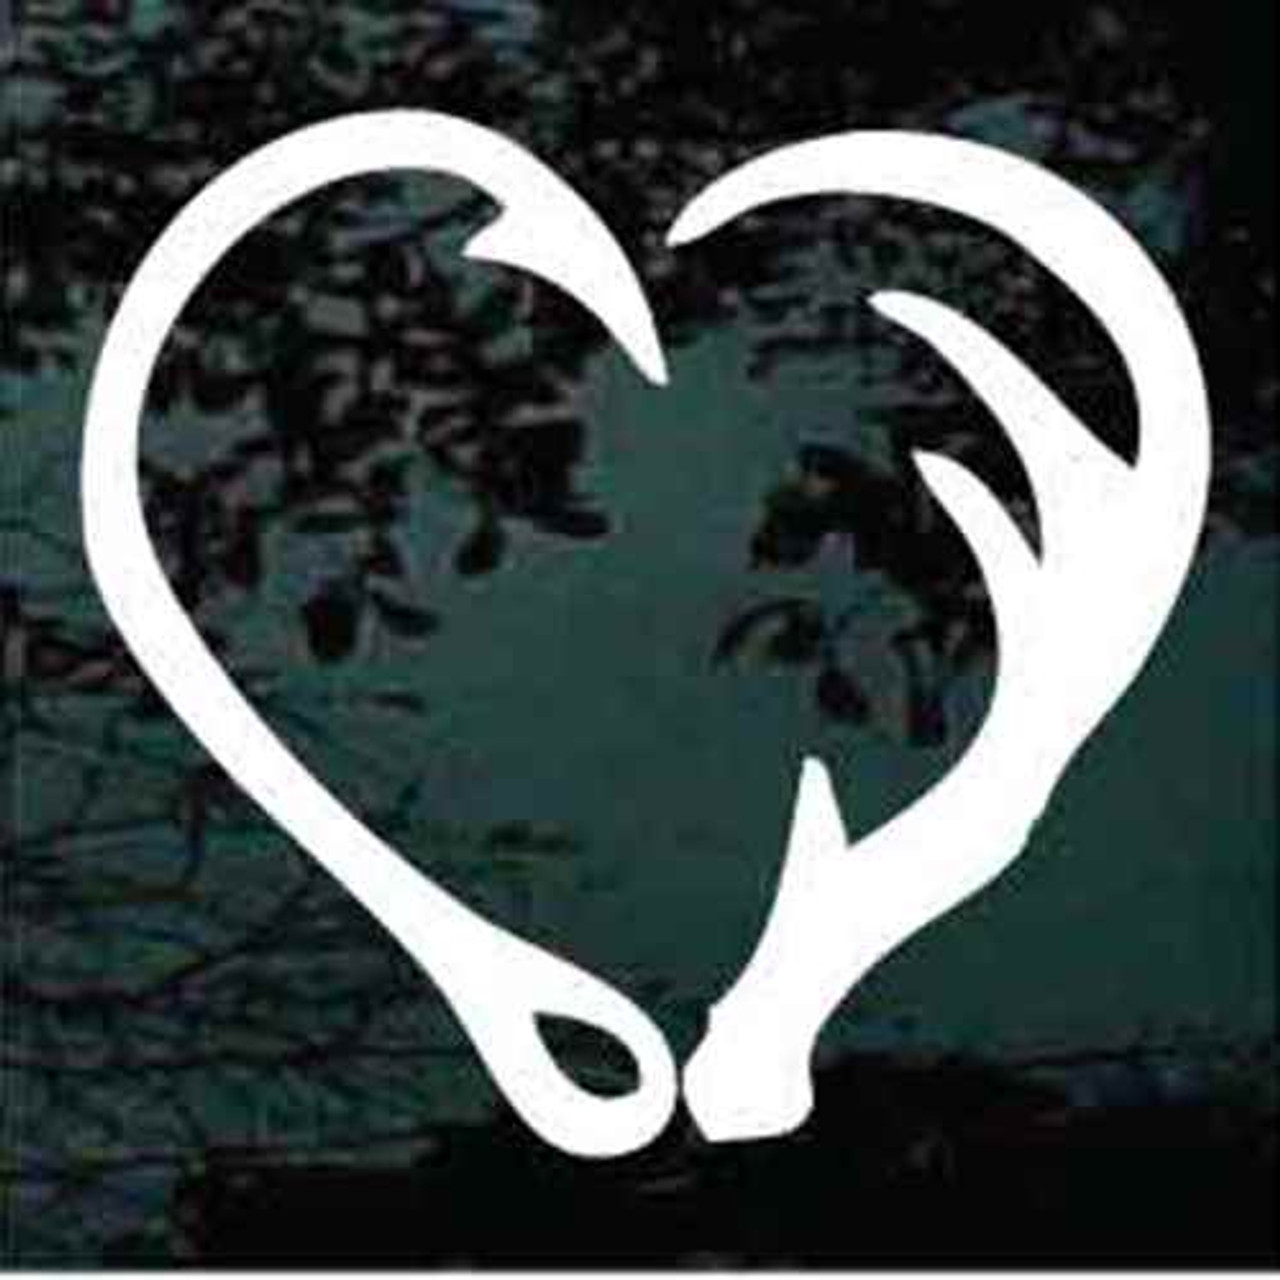 Hunting Window Decals - Fish Hook Deer Antler Heart - DecalJunky